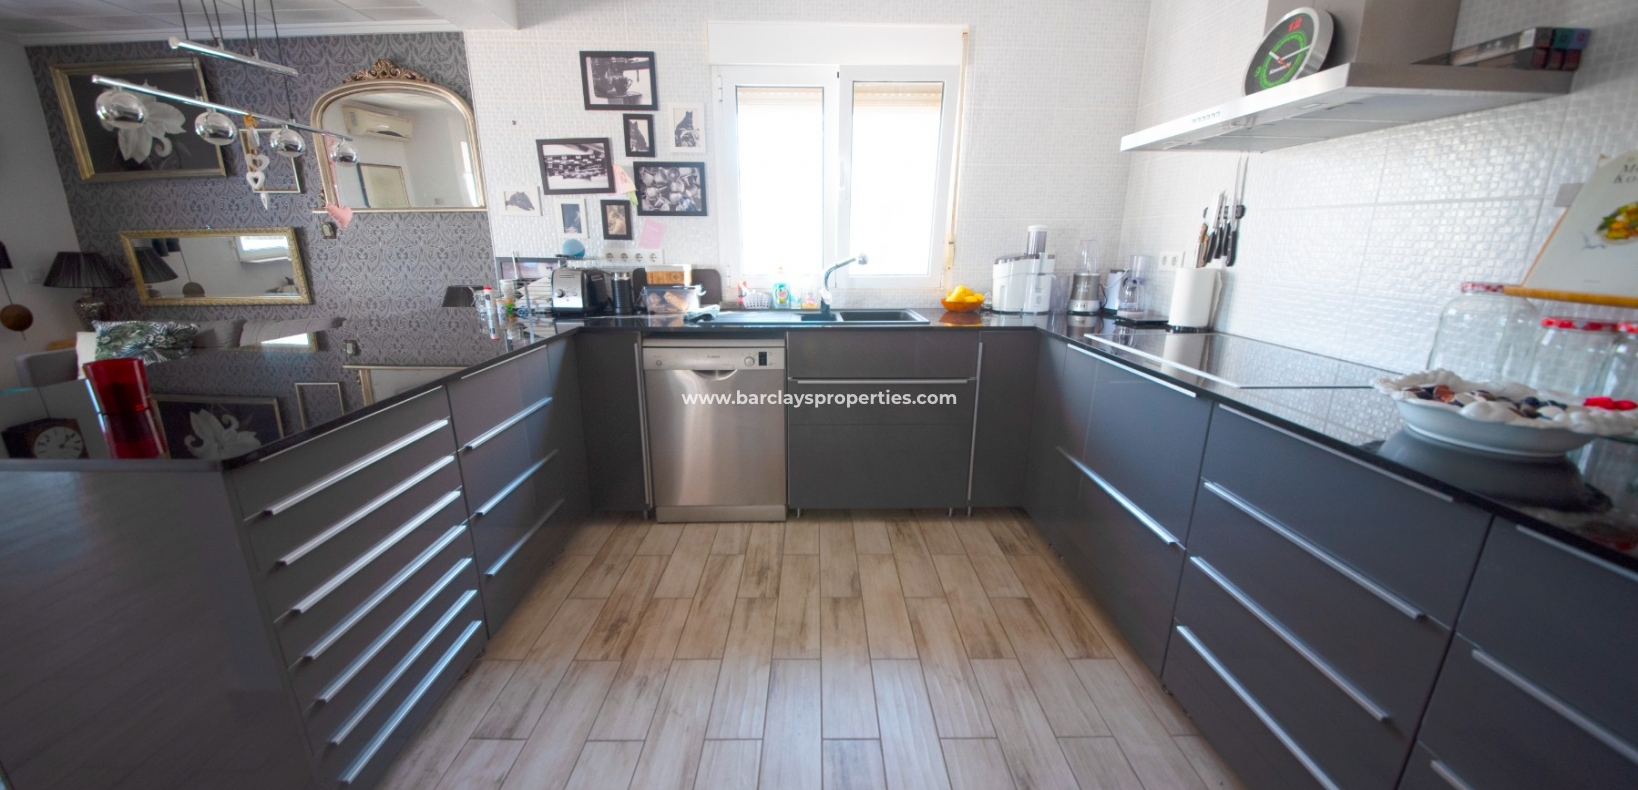 Keuken - Prestige Villa te koop in urbanisatie La Escuera, Alicante